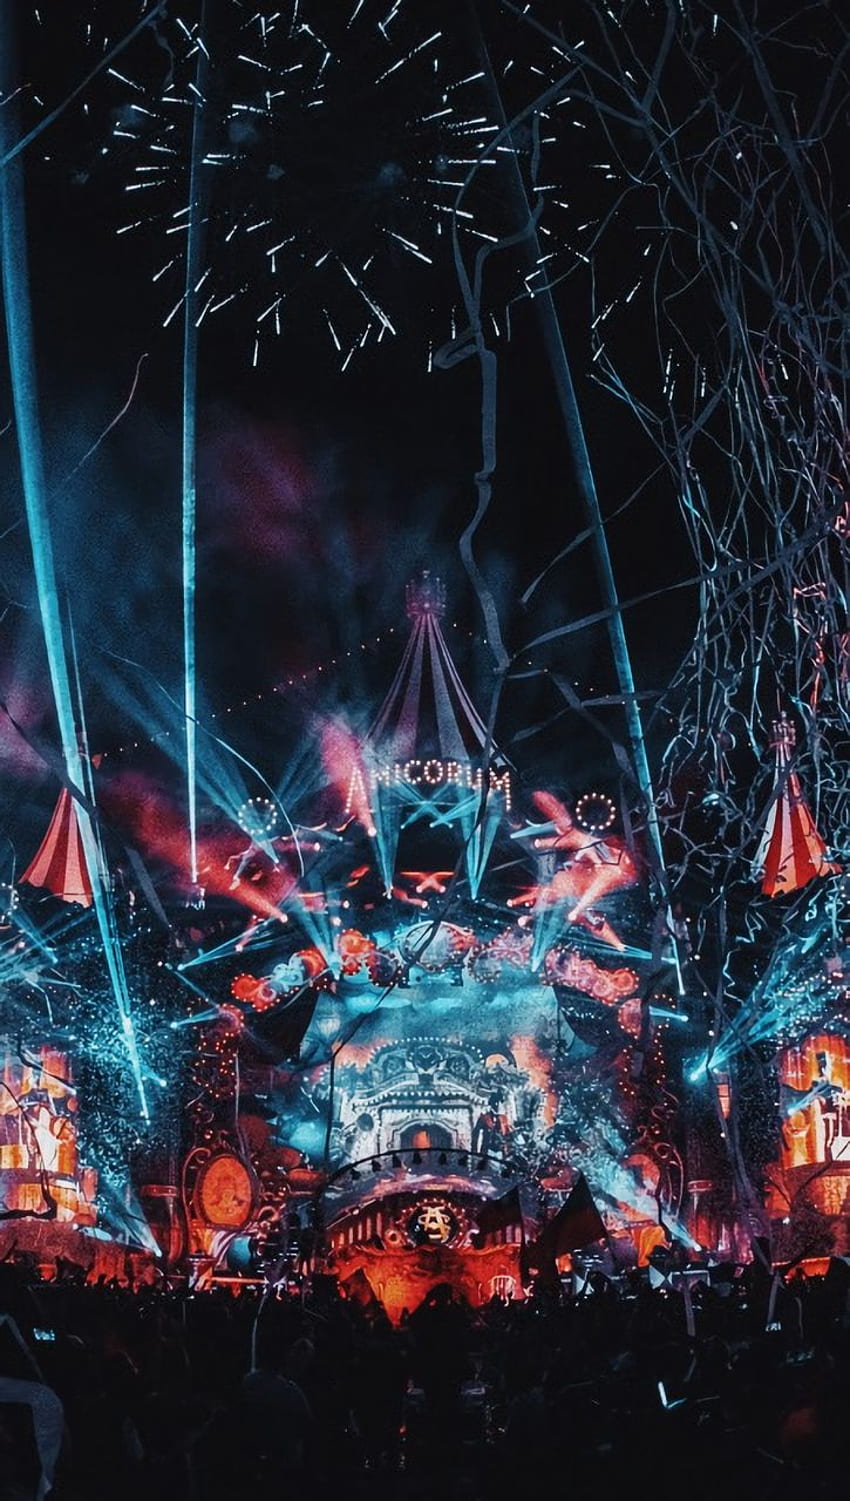 Tomorrowland è un evento musicale al quale aderiscono i dj più famosi, è un evento musicale che du. Festivais de musica eletronica, Festivais, Festivais de musica, Electronic Festival HD phone wallpaper